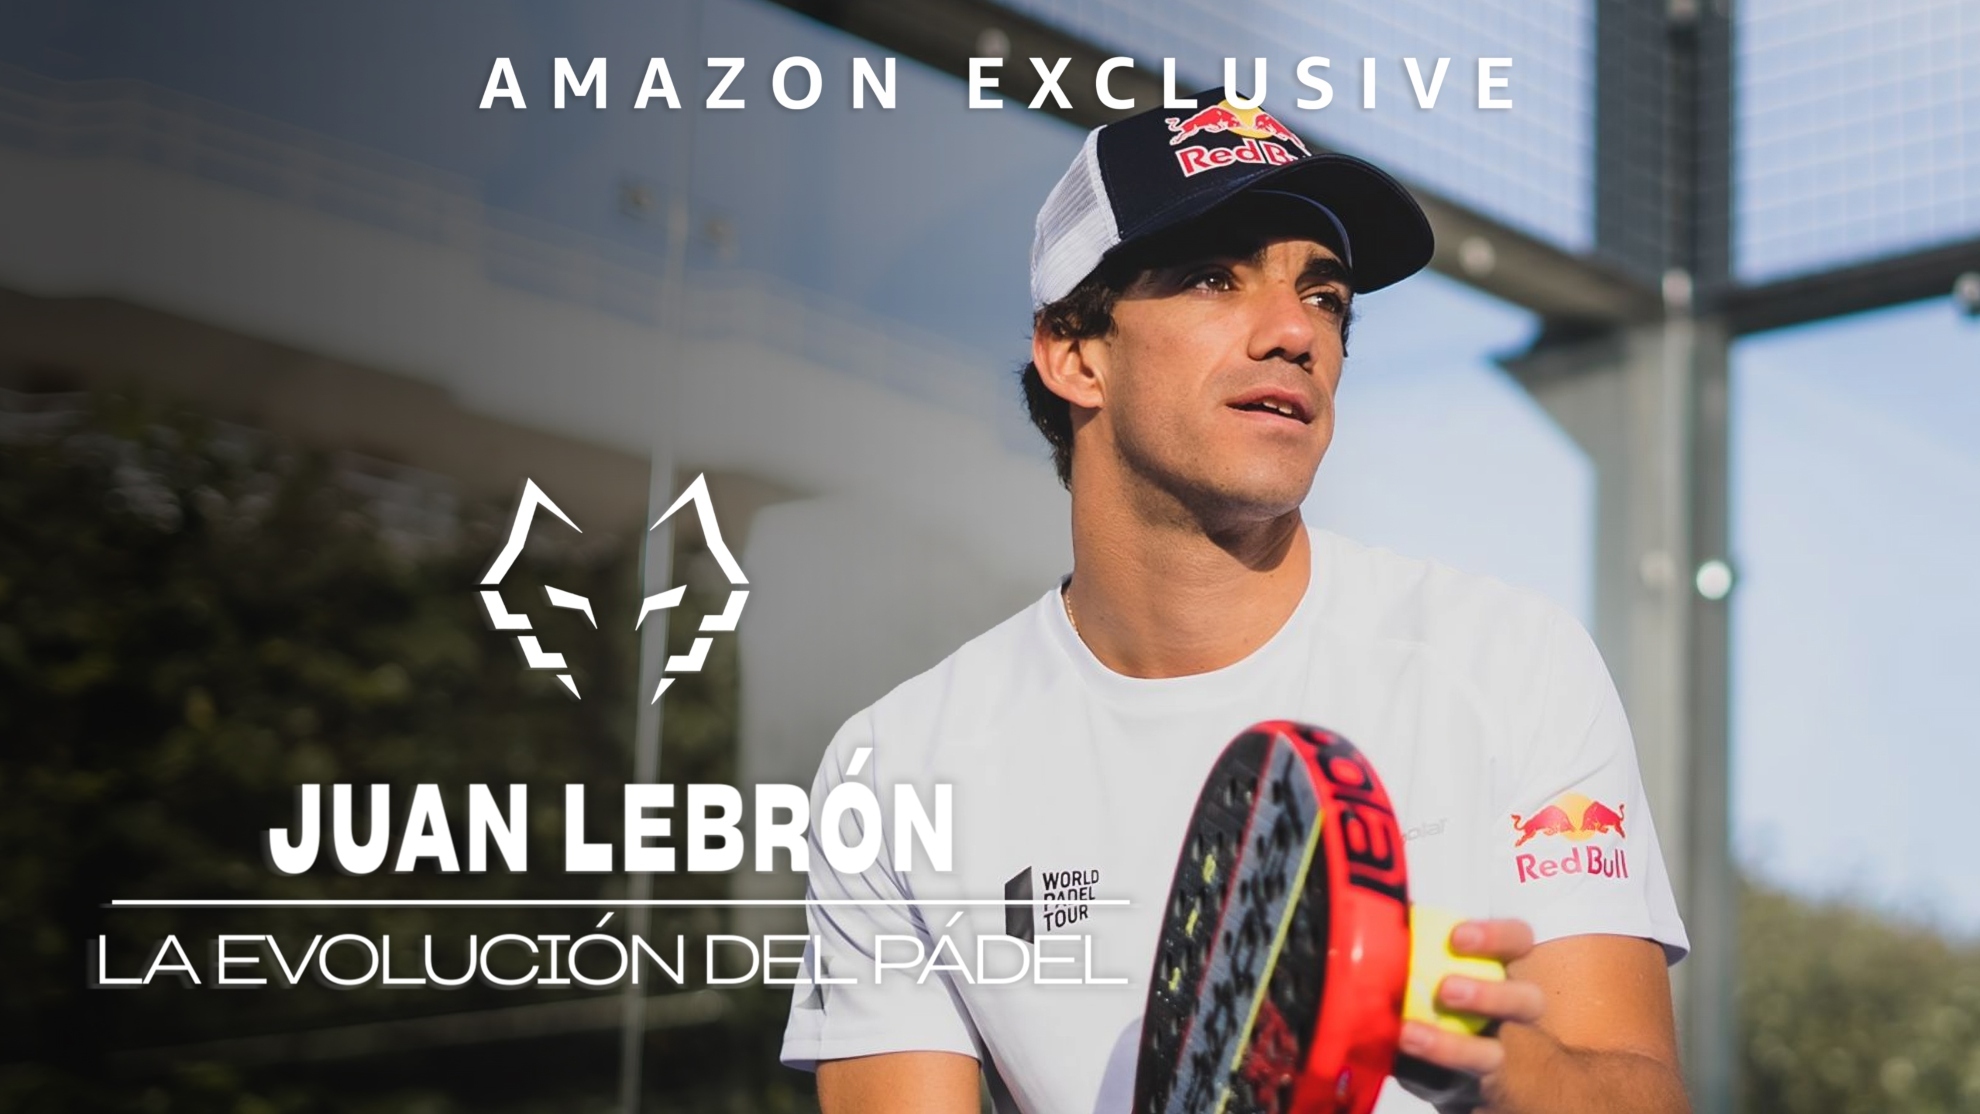 Lebrón, el campeón de Roland Garros, estrena su documental en Amazon